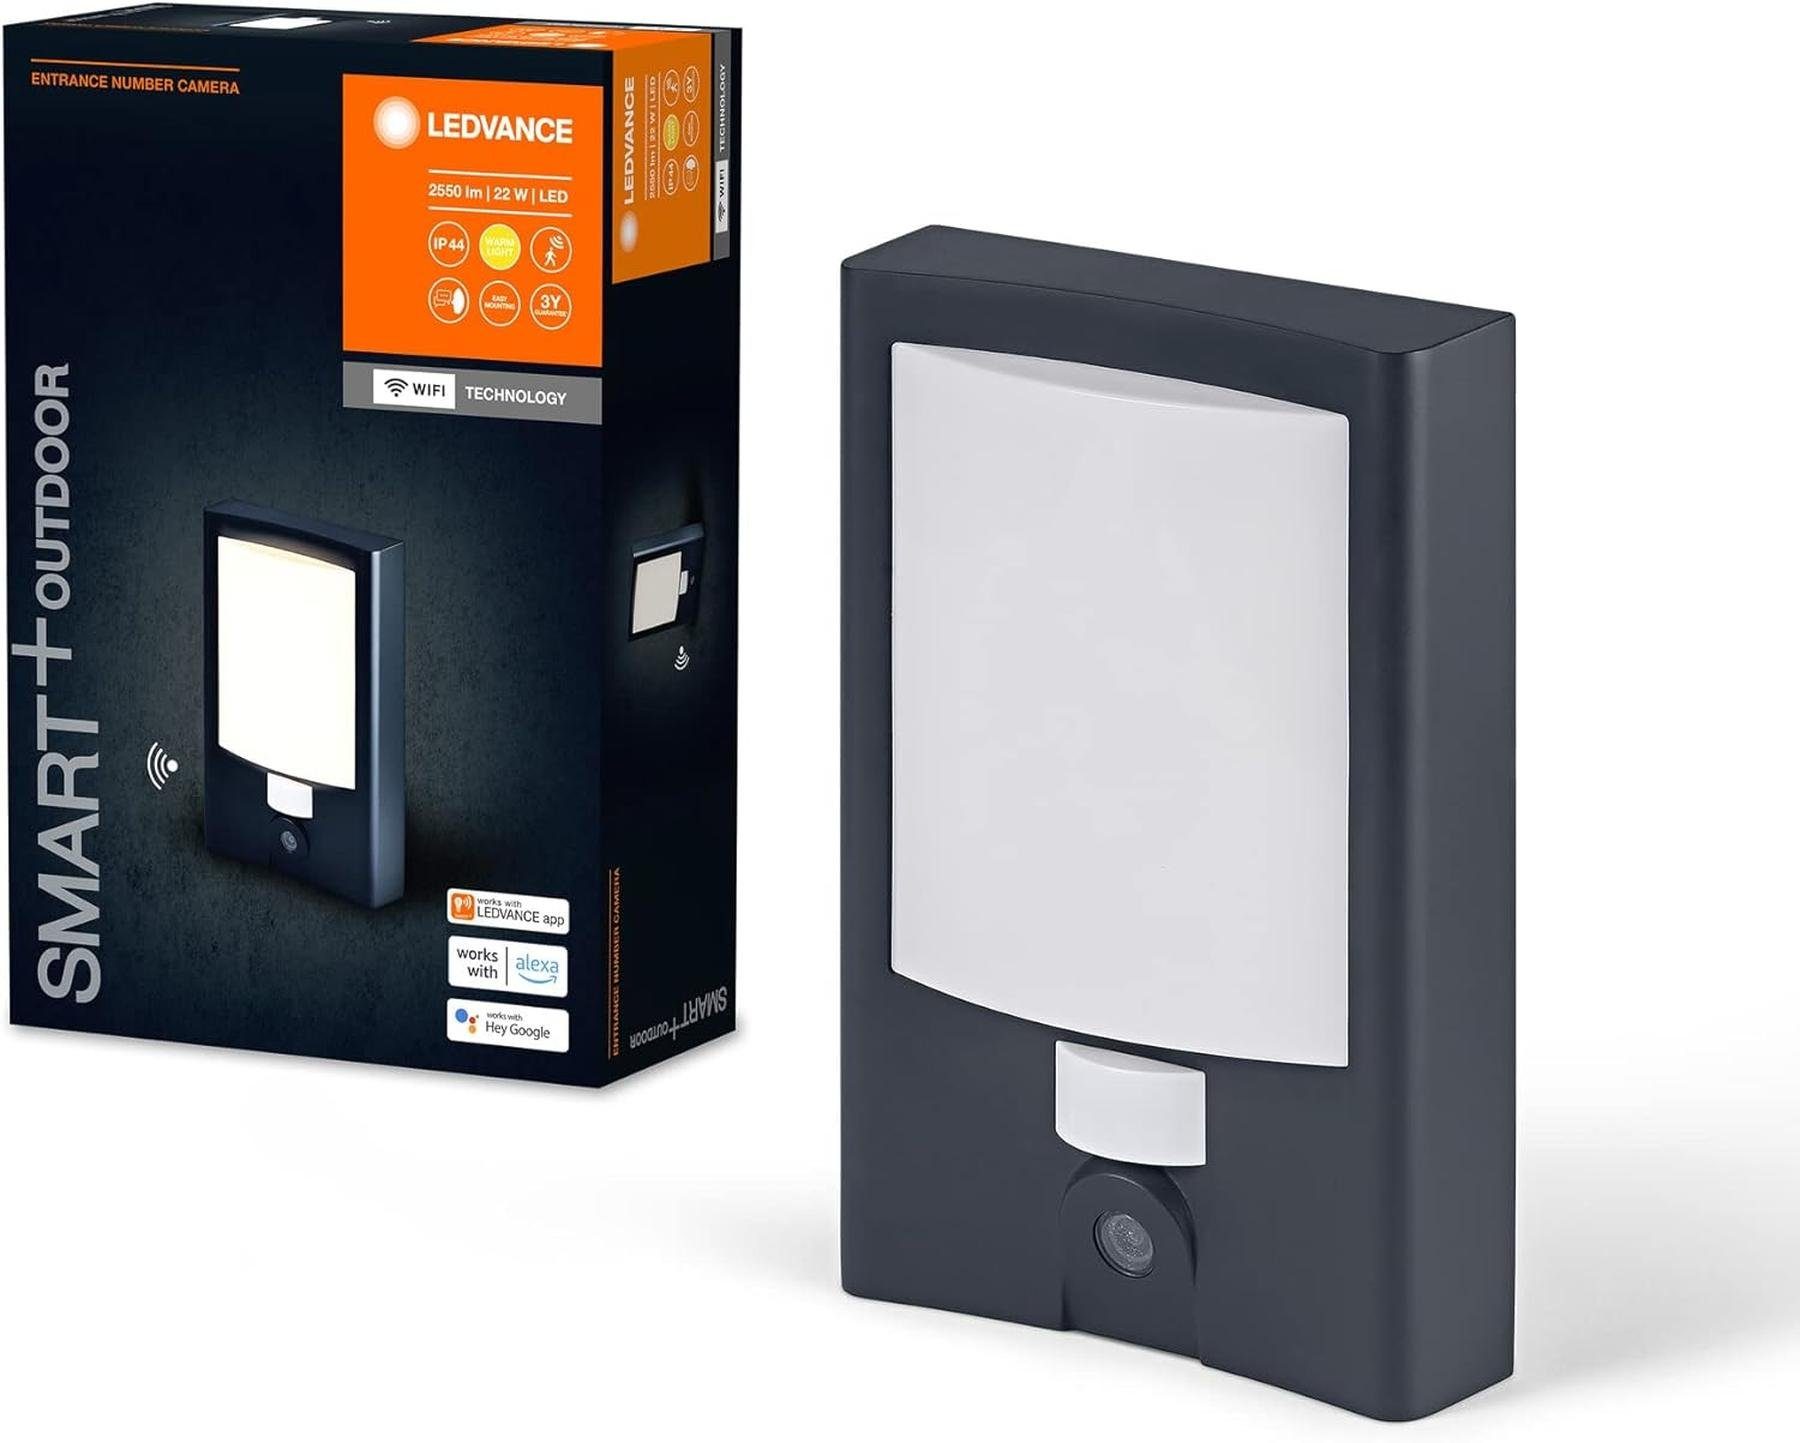 Outdoor Licht SMART+ smarte Hausnummer LEDVANCE (3000 WIFI-Technolo K) warmweißes Ledvance